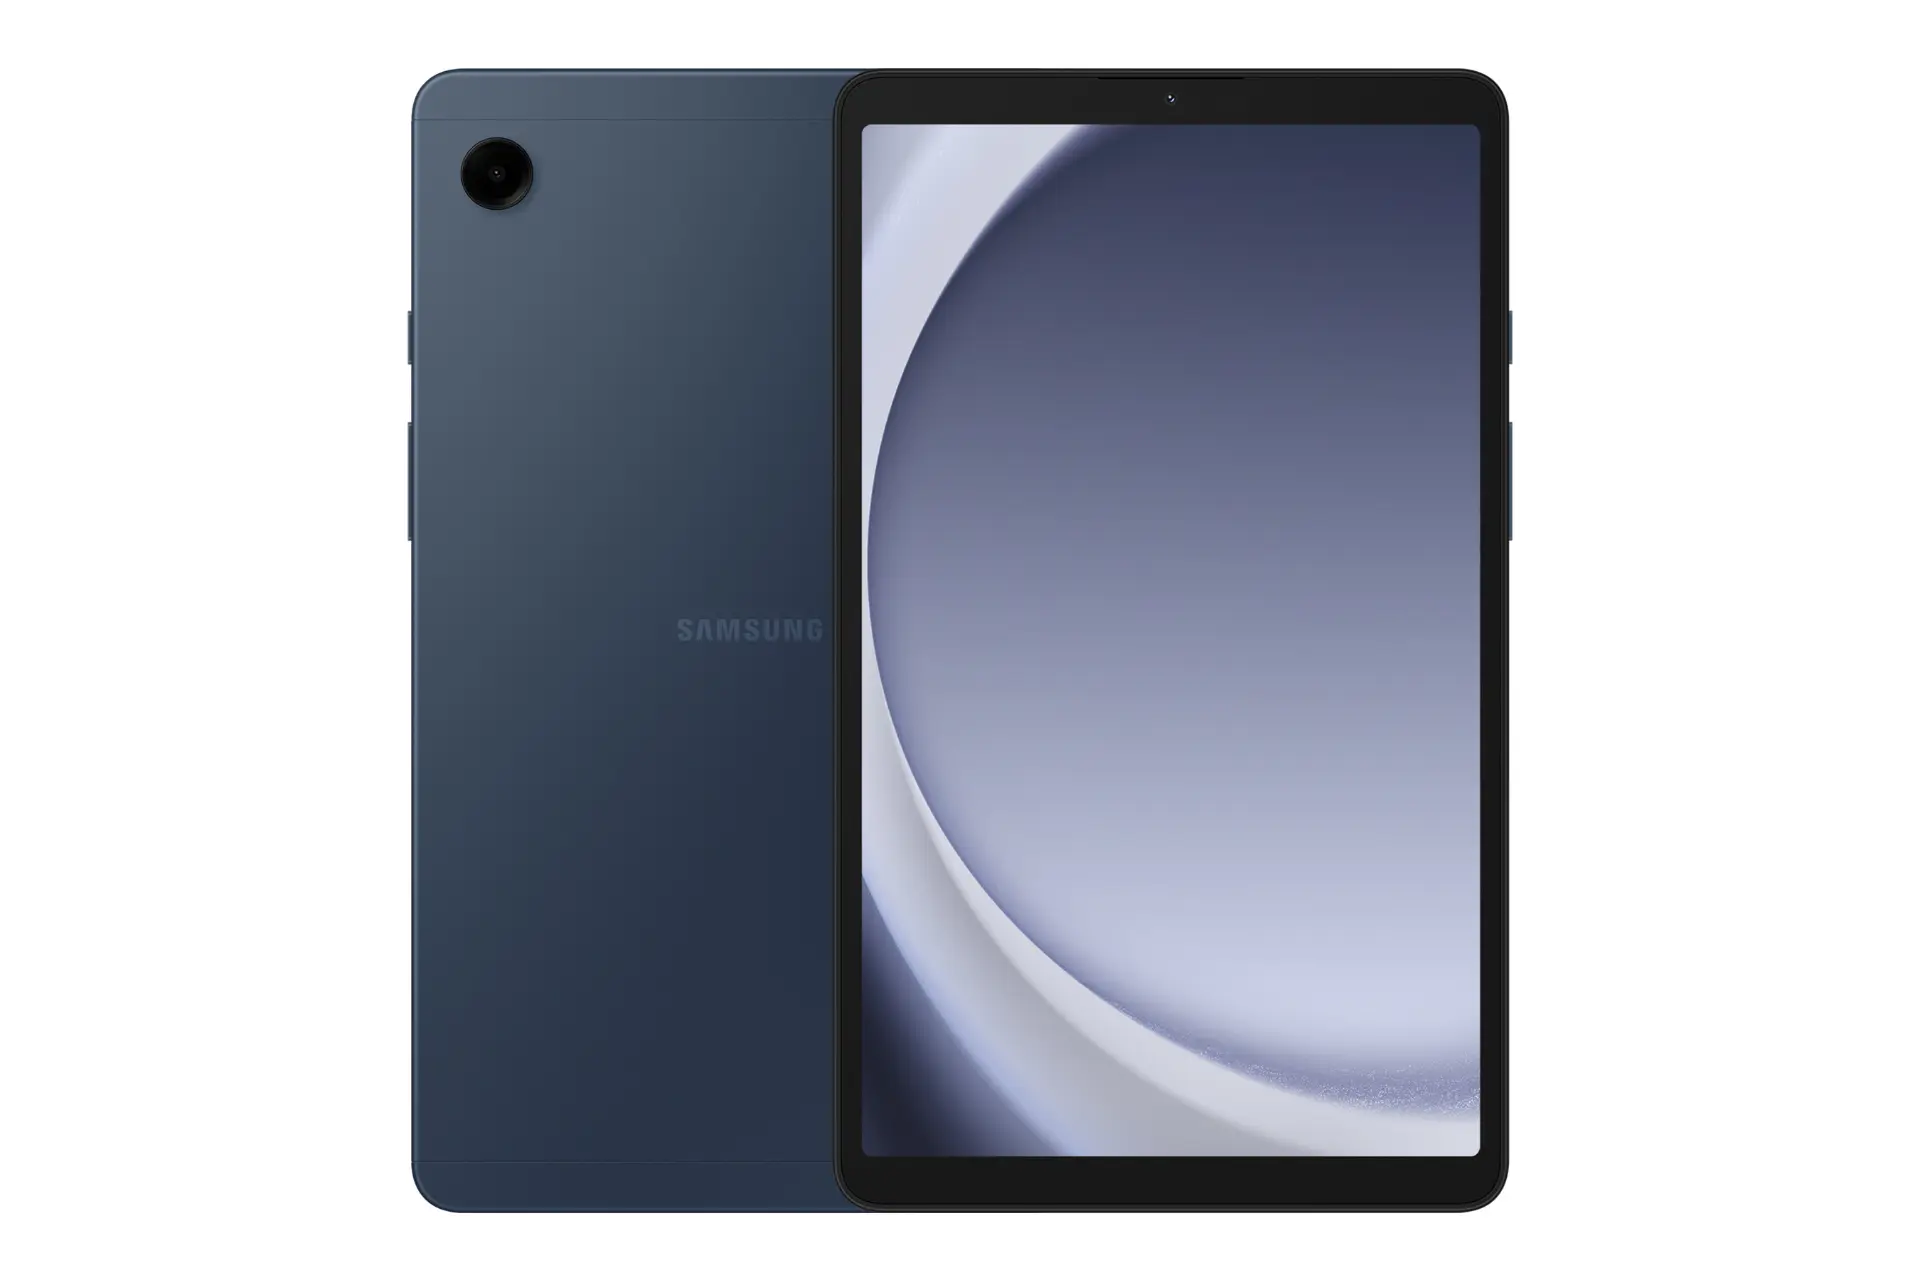 نمای کلی تبلت گلکسی تب A9 سامسونگ / Samsung Galaxy Tab A9 با نمایشگر روشن و نمایش لوگو و دوربین پنل پشت رنگ آبی